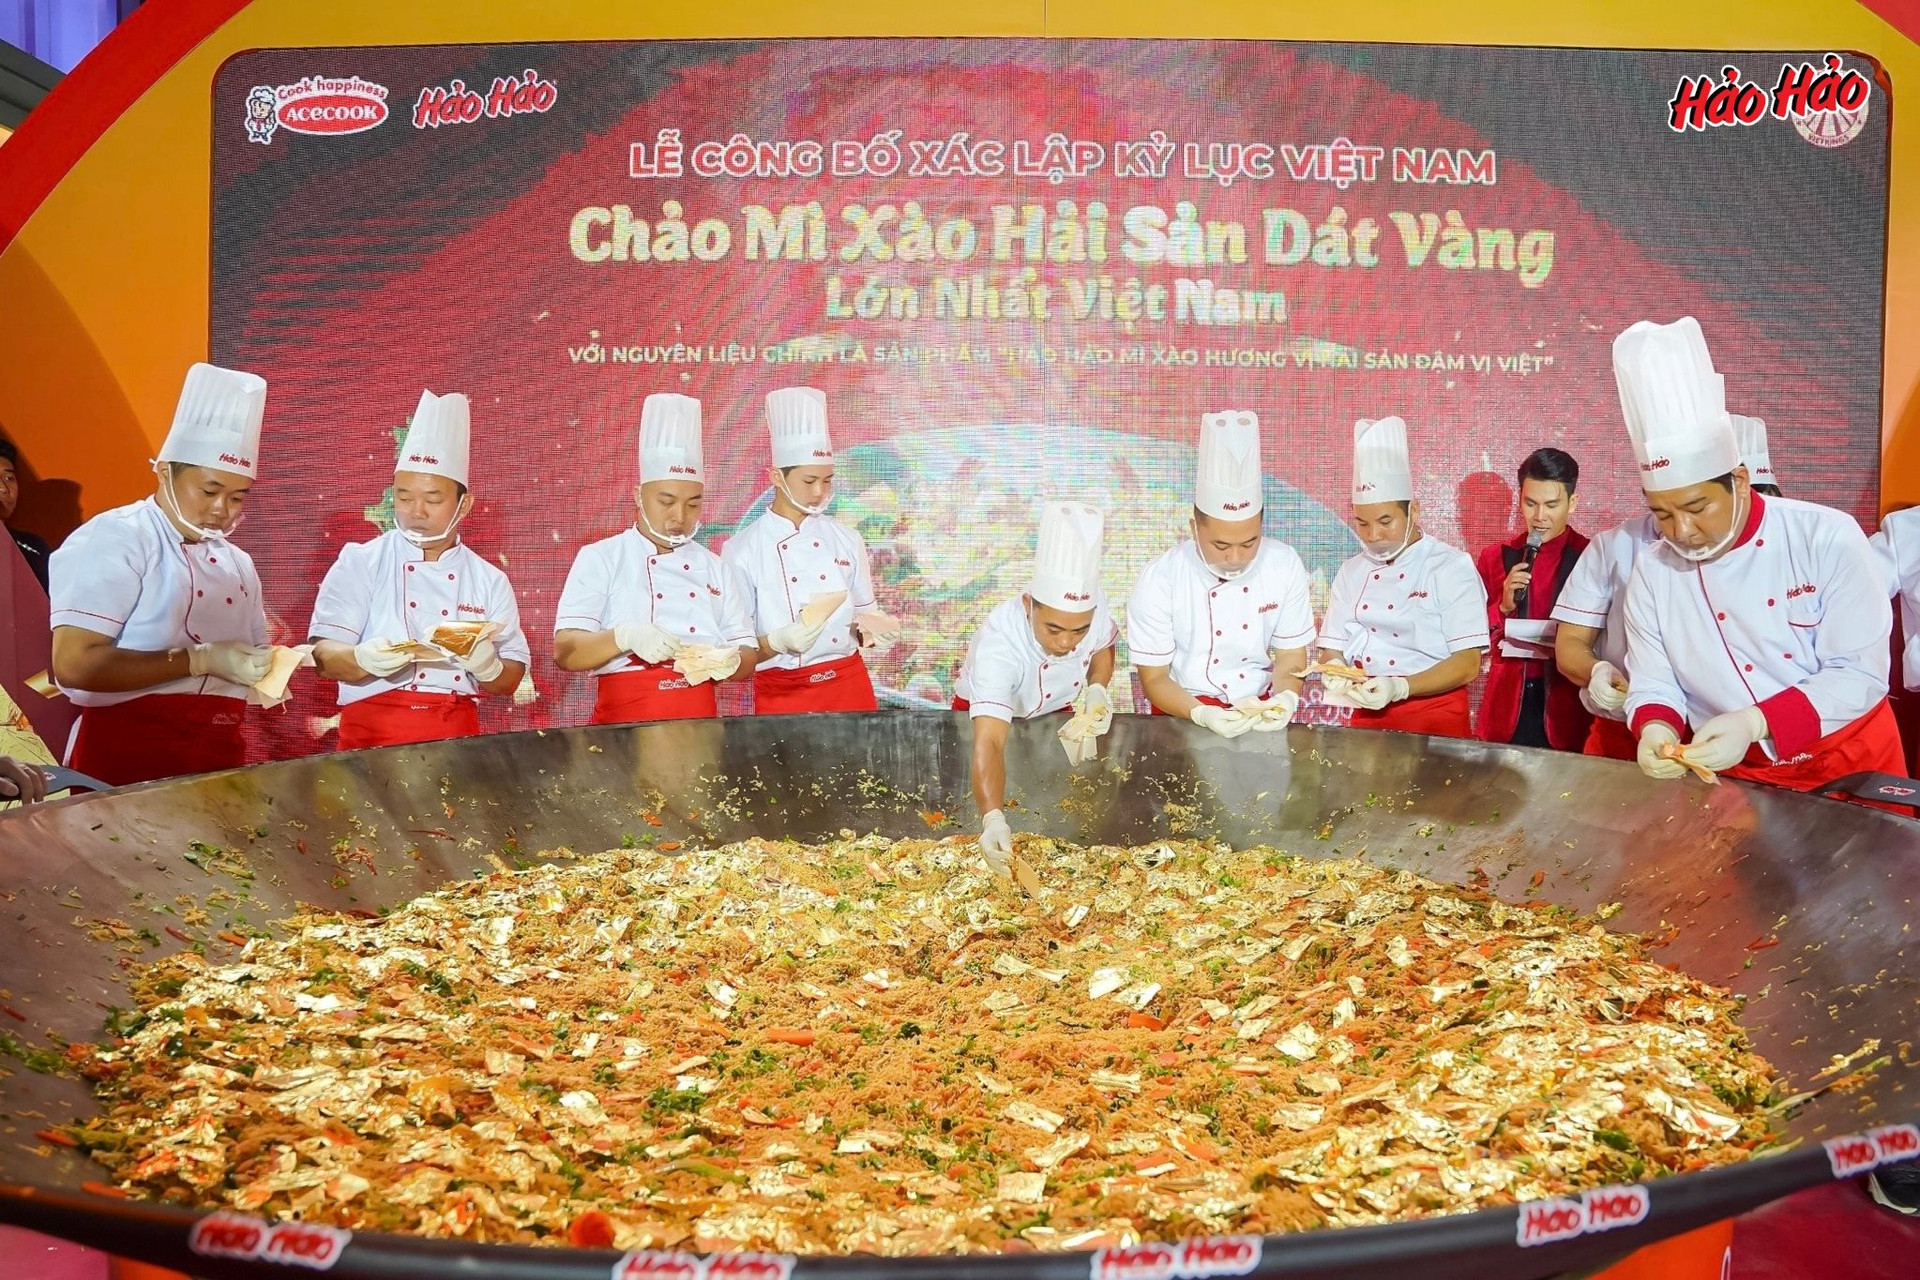 Doanh nghiệp đằng sau chảo mì xào hải sản dát vàng lớn nhất Việt Nam với 20 hũ vàng vảy và 500 lá vàng dát mỏng- Ảnh 1.